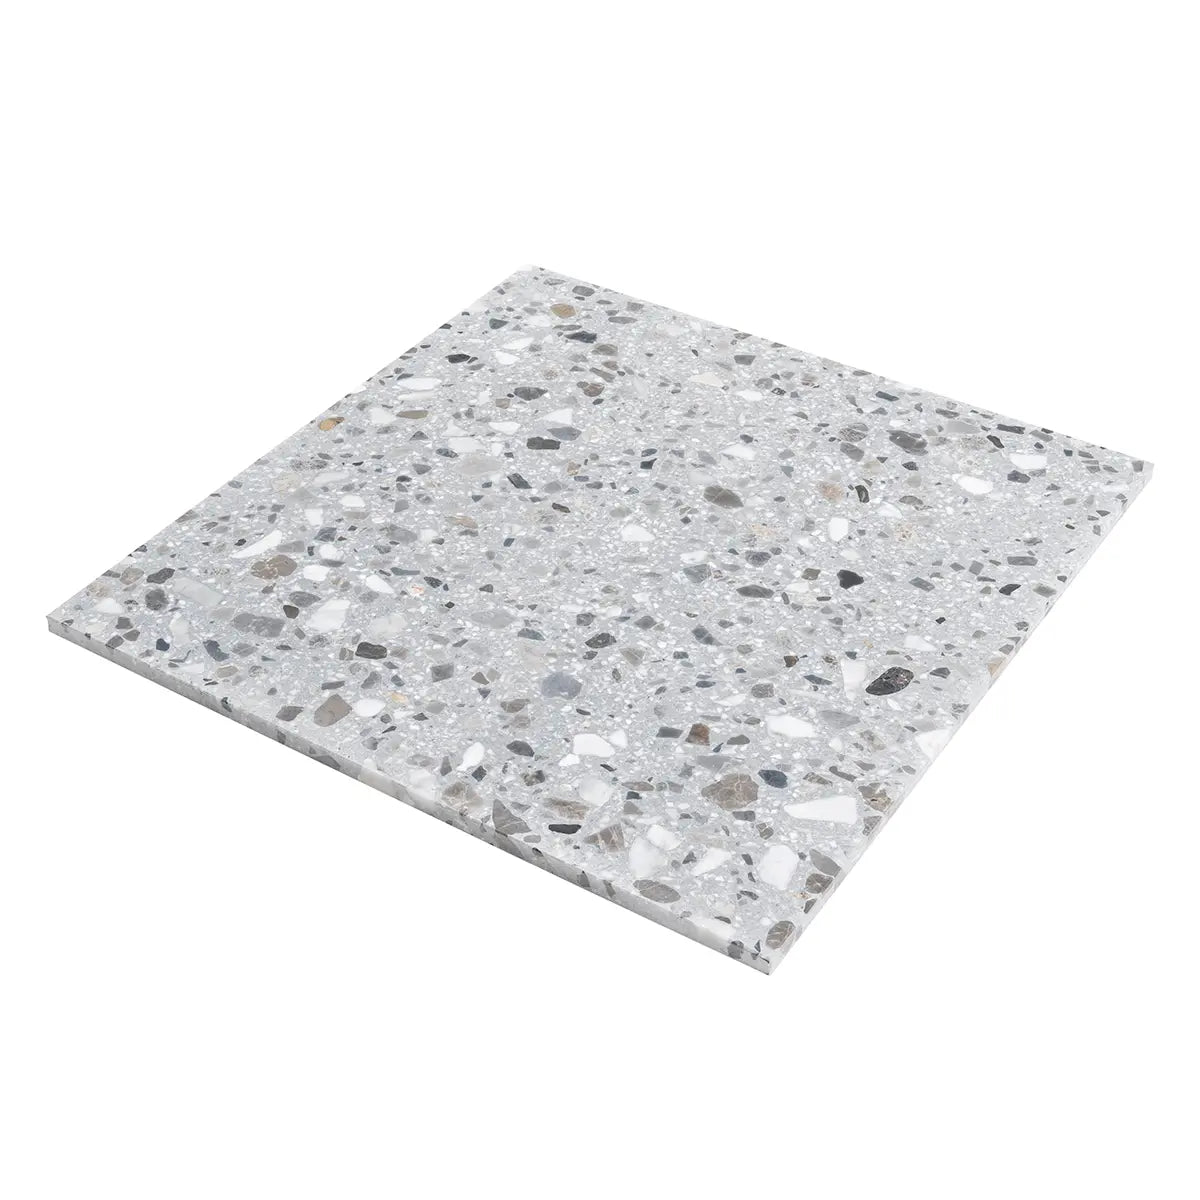 Gray and White Terrazzo Concrete Tile 24" x 24"